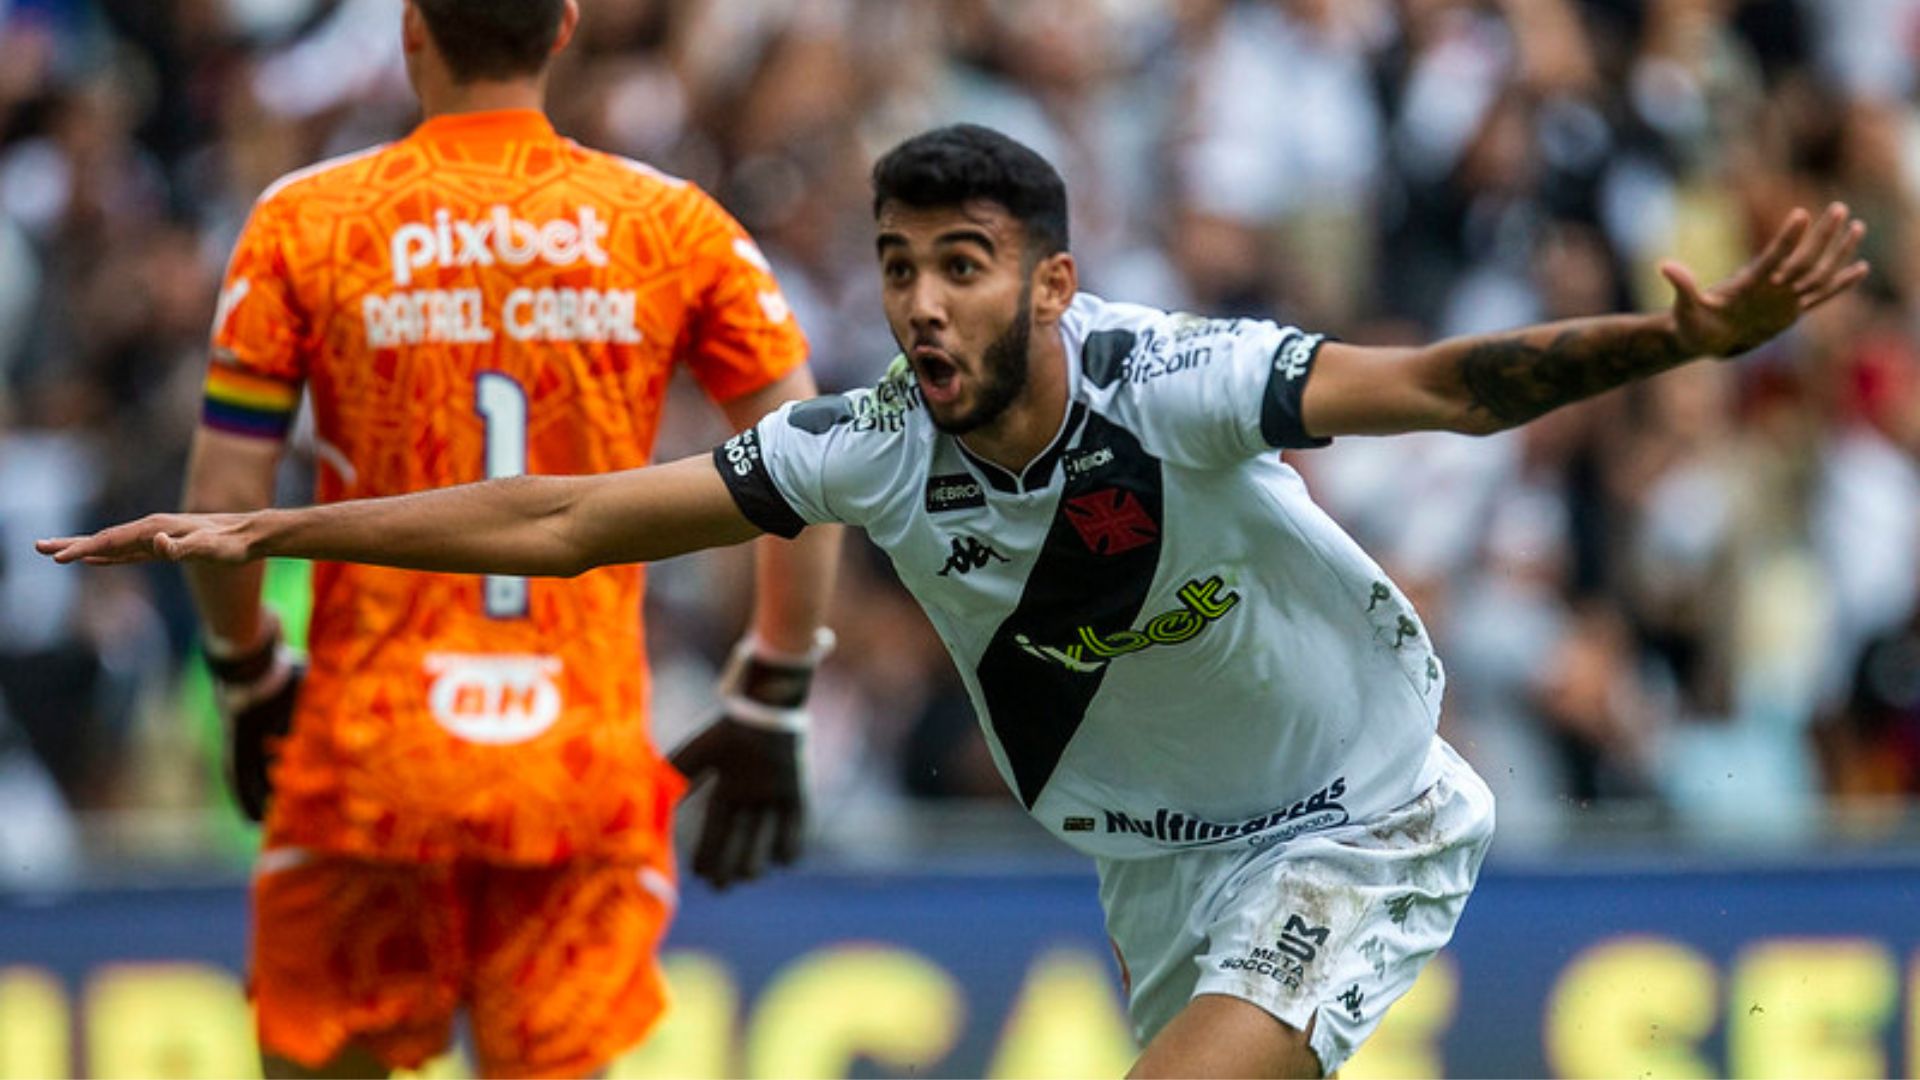 Jogador do Vasco comemorando o gol na partida do Basileirão